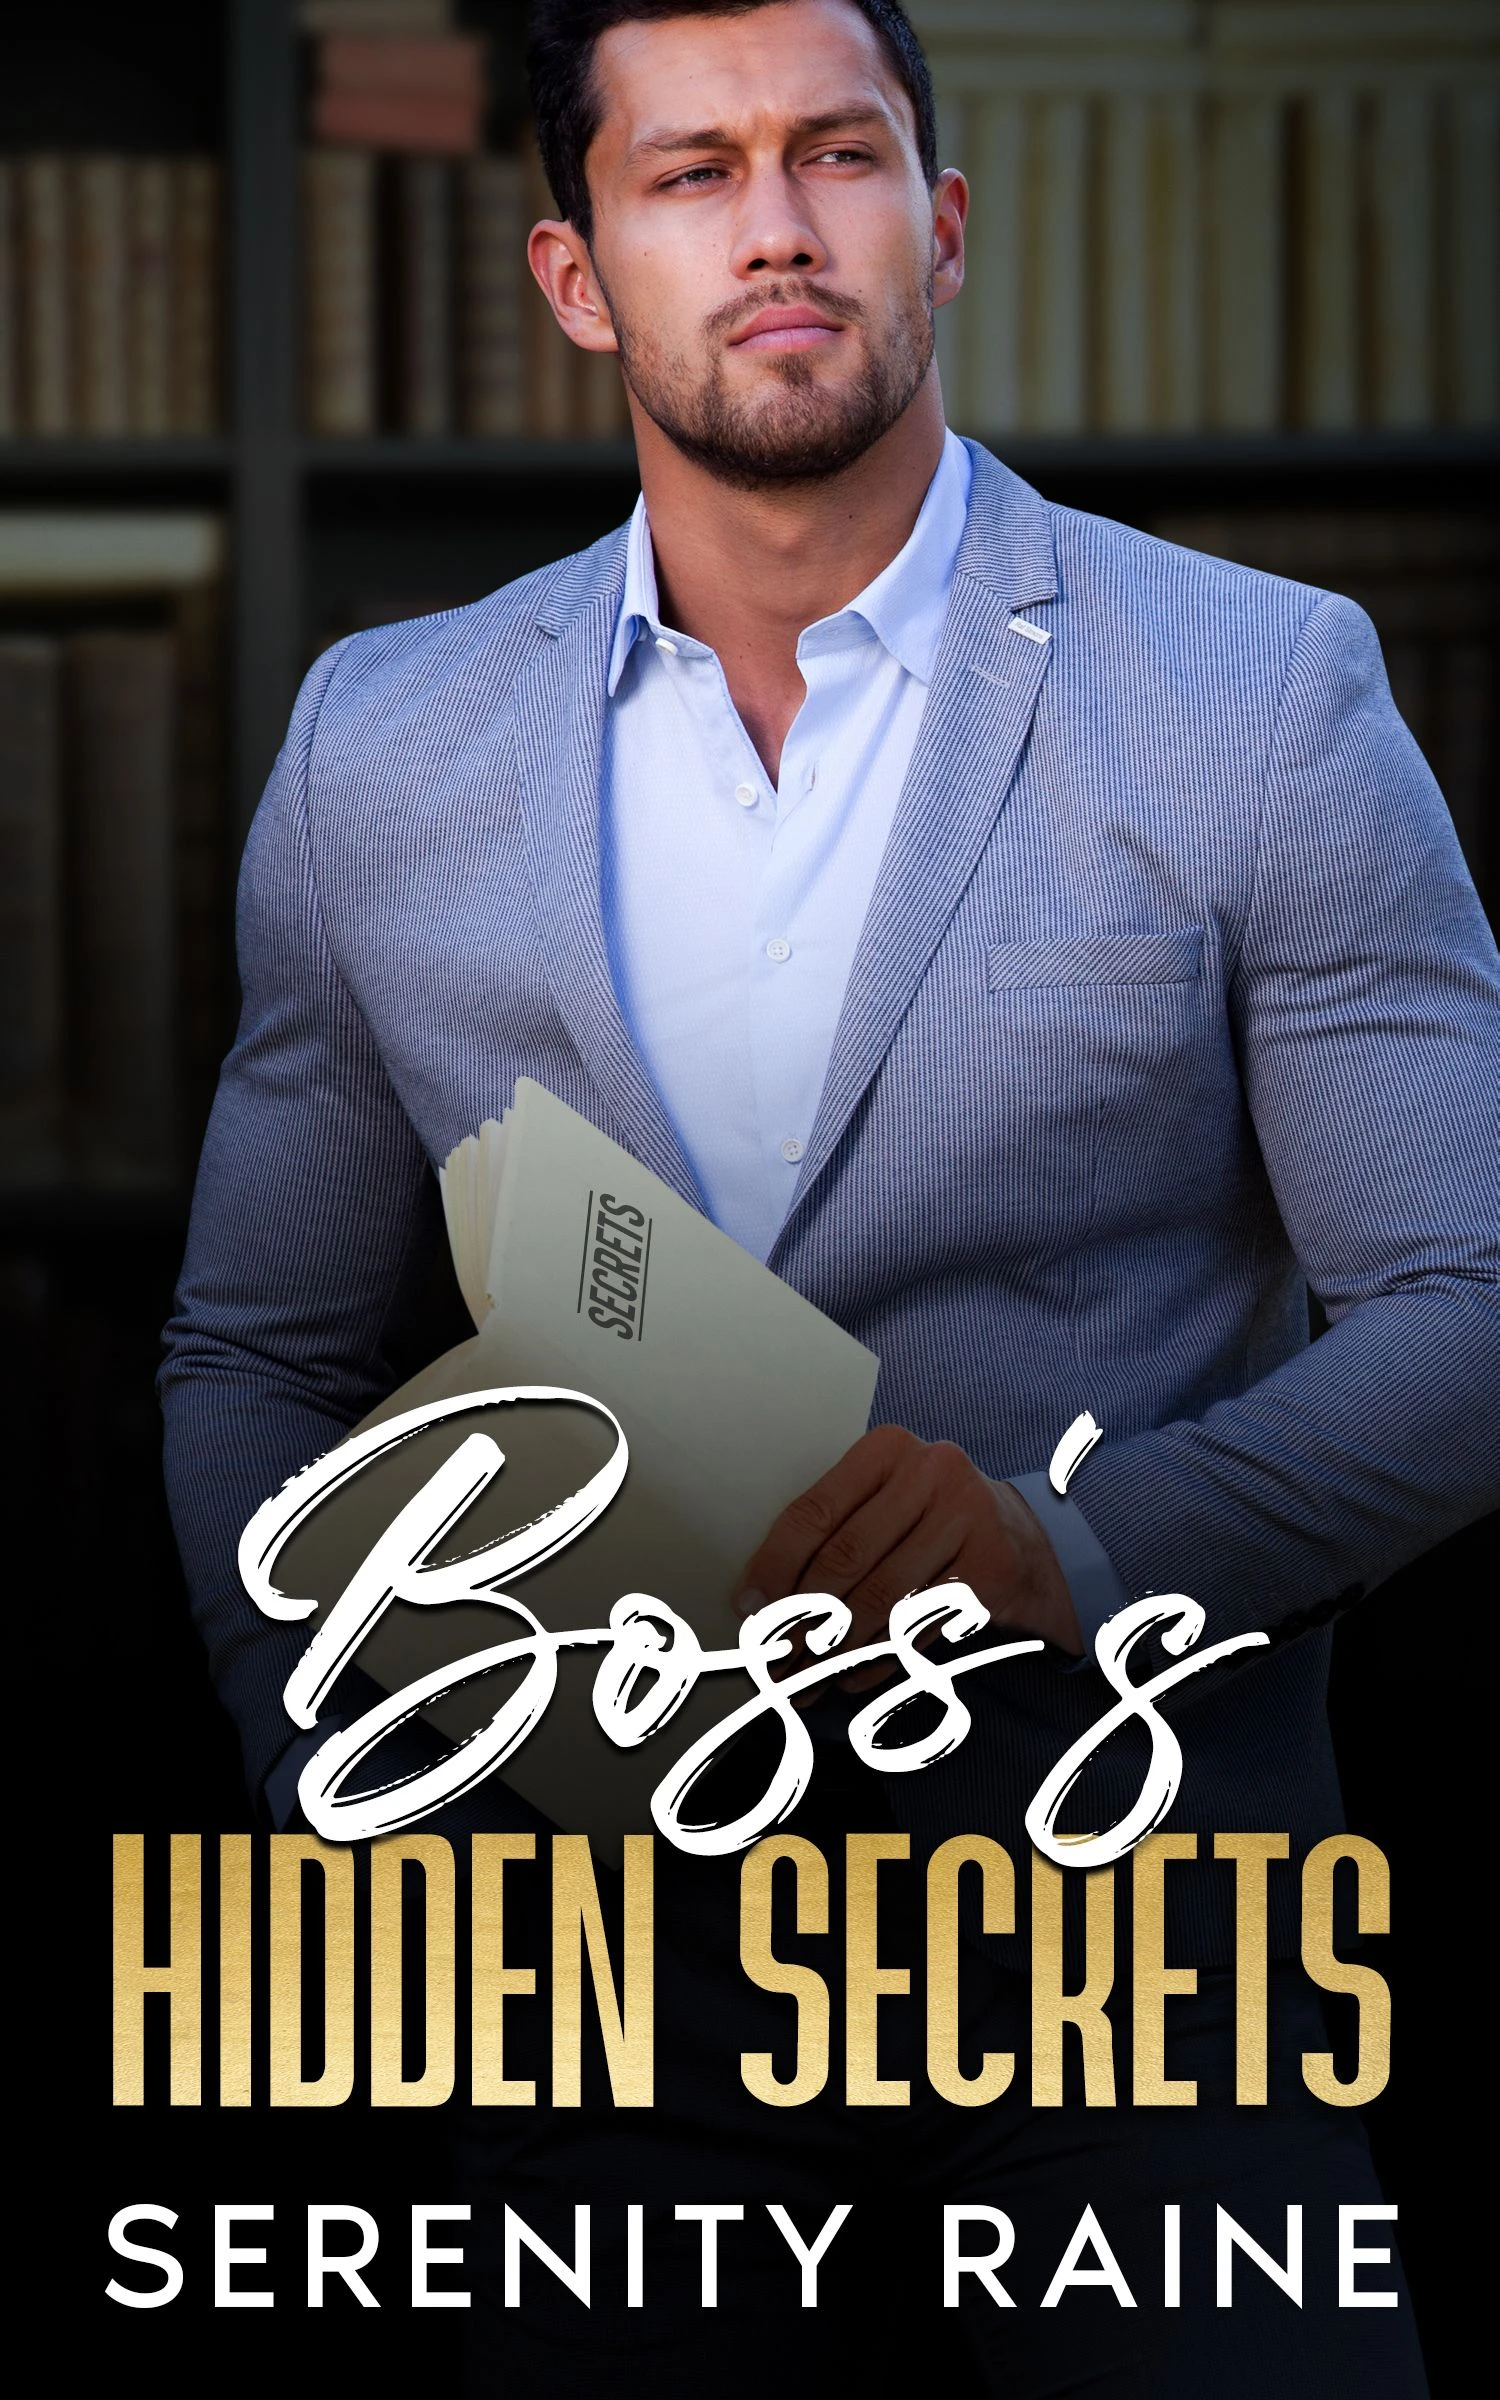 Boss’s Hidden Secrets